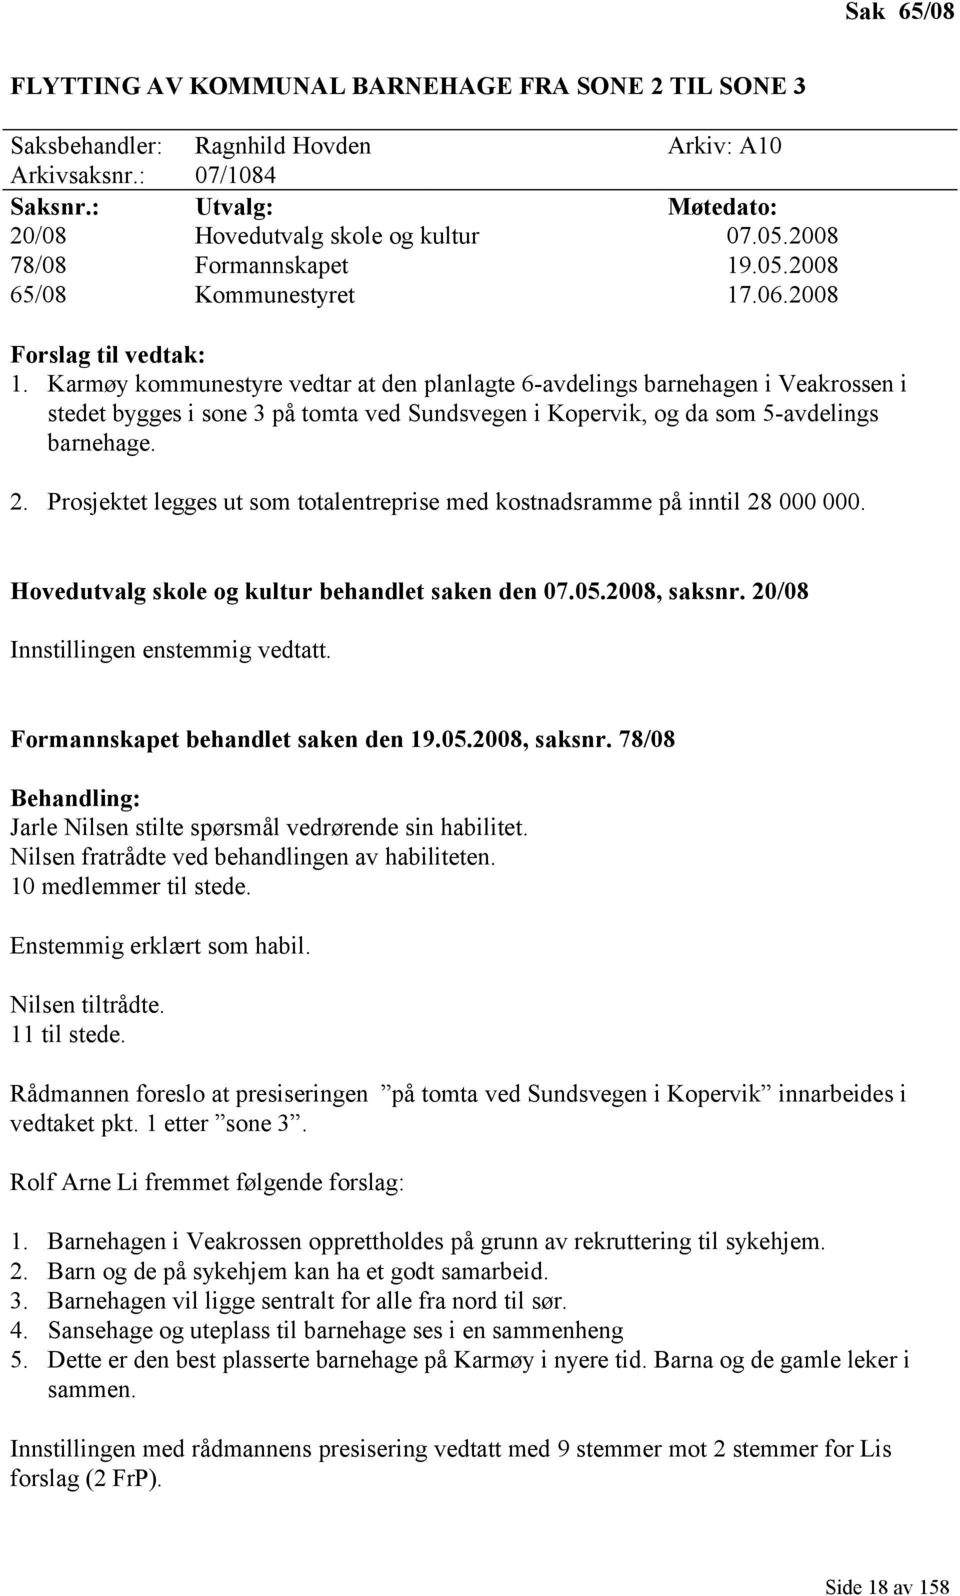 Karmøy kommunestyre vedtar at den planlagte 6-avdelings barnehagen i Veakrossen i stedet bygges i sone 3 på tomta ved Sundsvegen i Kopervik, og da som 5-avdelings barnehage. 2.